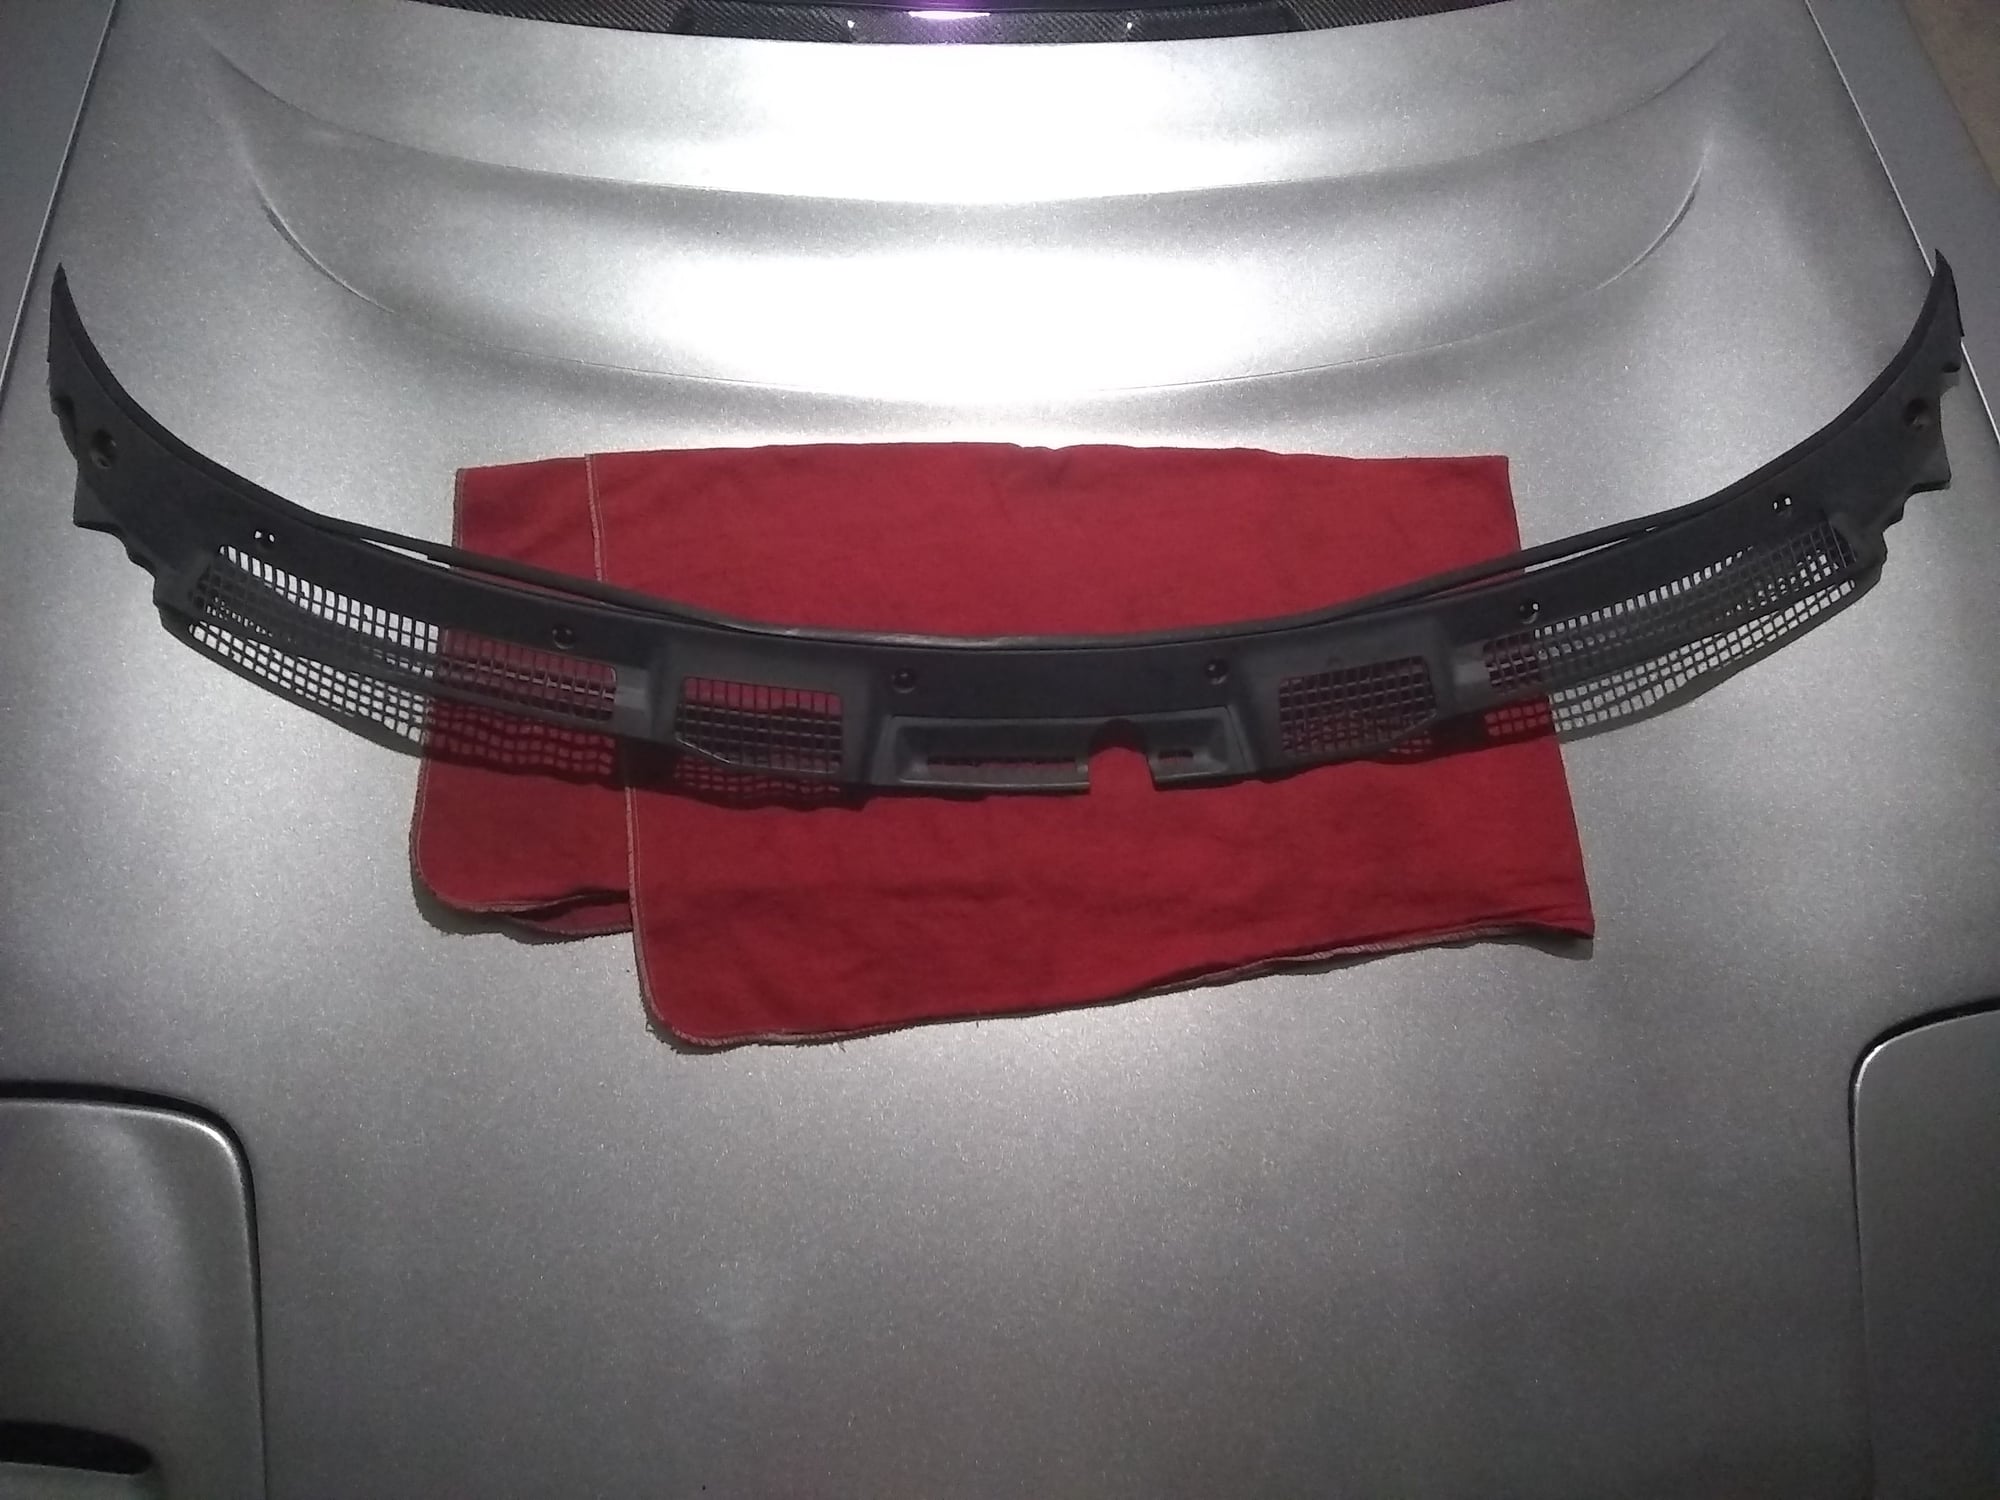 Exterior Body Parts - FS: FD windshield wiper cowl - Used - 1993 to 2001 Mazda RX-7 - Dallas, TX 75252, United States